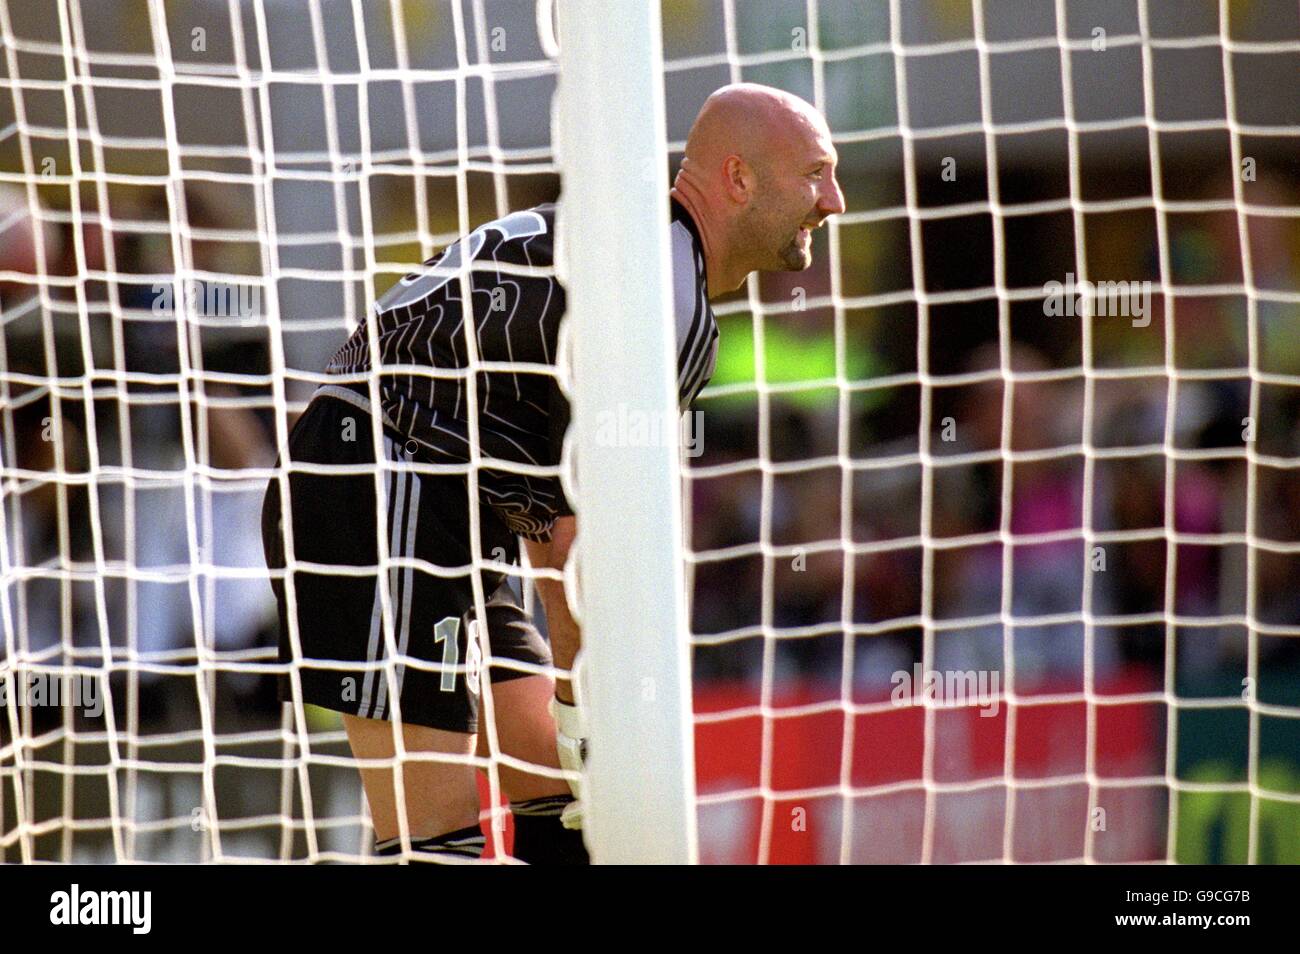 Soccer - Euro 2000 - Group D - Czech Republic v France. France goalkeeper Fabien Barthez stands guard Stock Photo